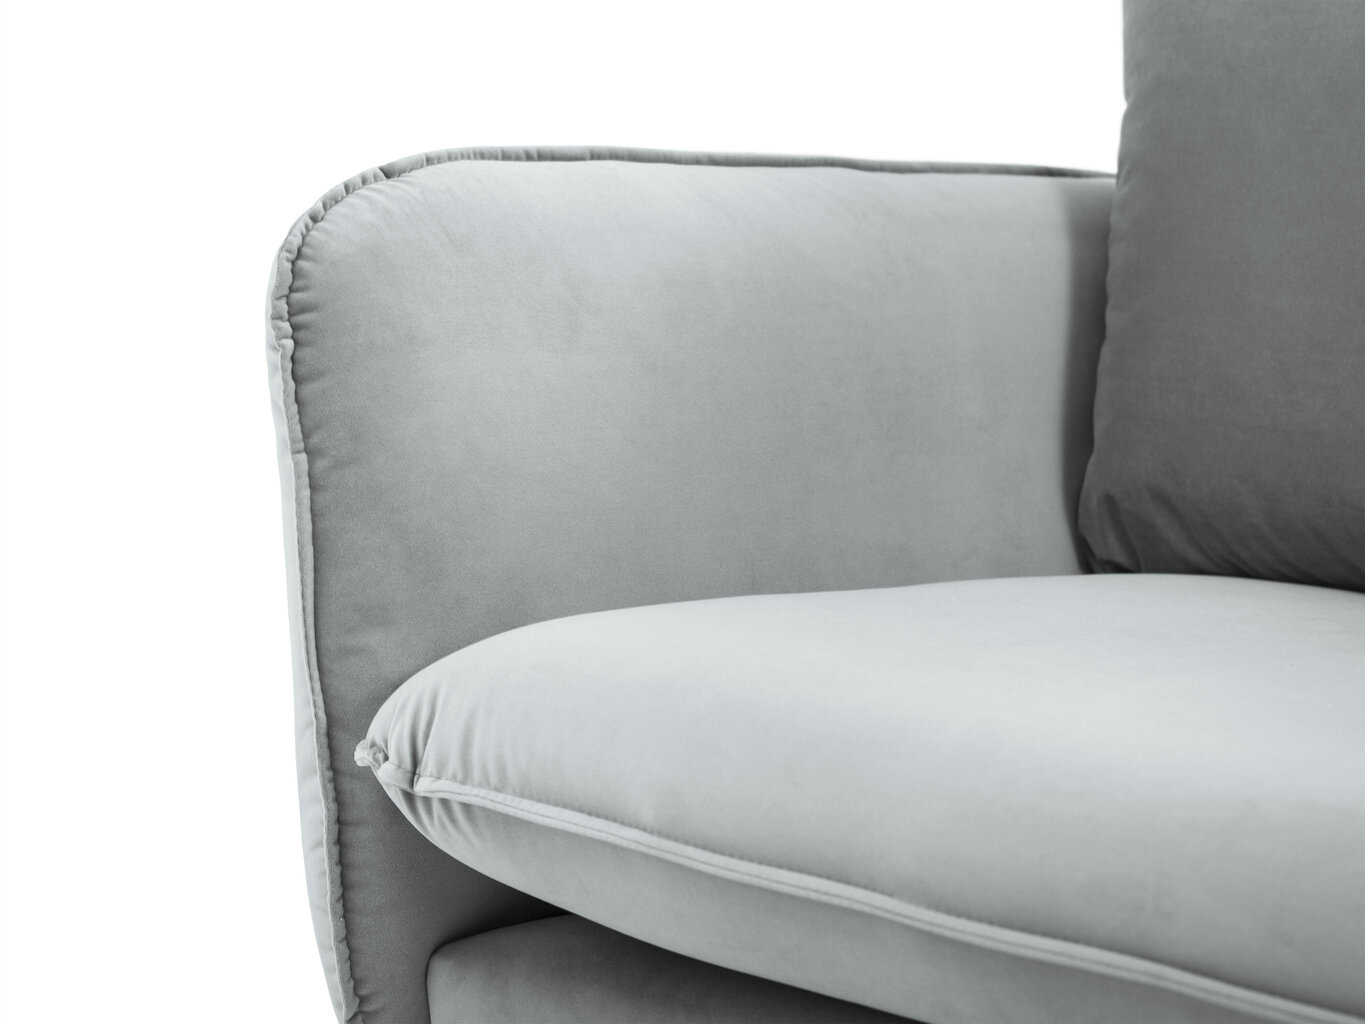 Sofa Cosmopolitan Design Florence 2S, šviesiai pilka kaina ir informacija | Sofos | pigu.lt